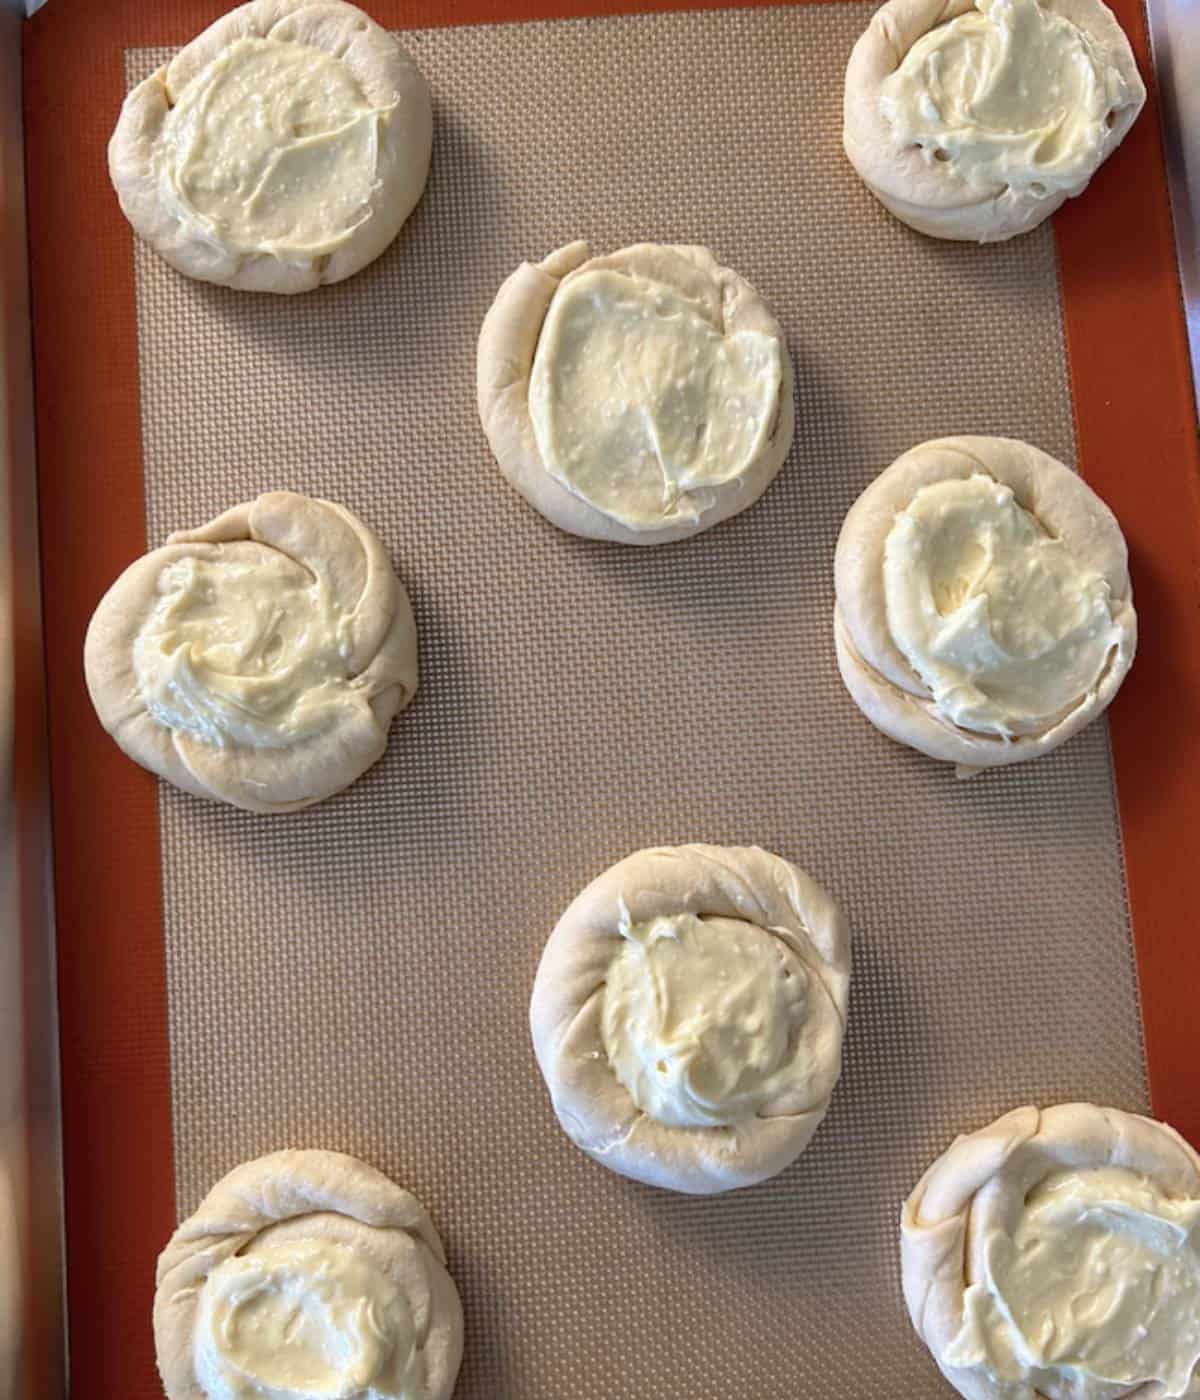 Pillsbury Cream cheese danish with filling on cookie sheet.